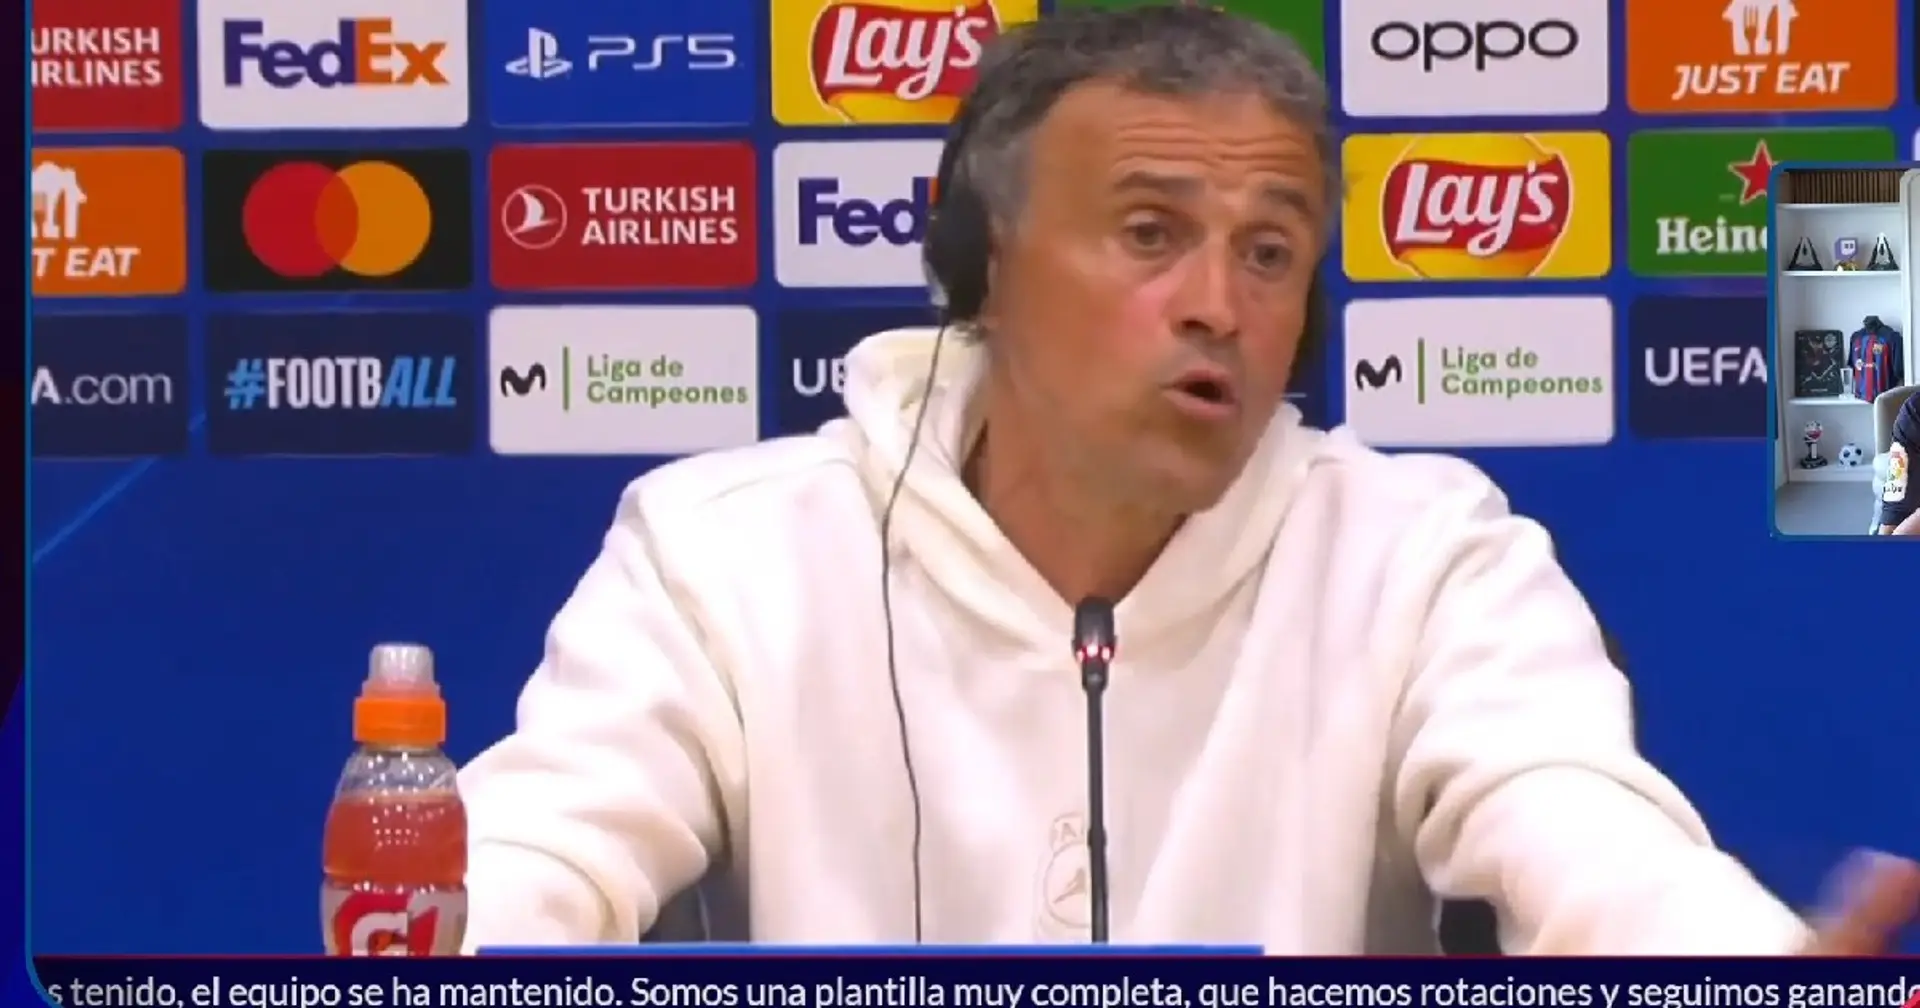 Luis Enrique hints at his tactics, reveals exact moment PSG will press Barca